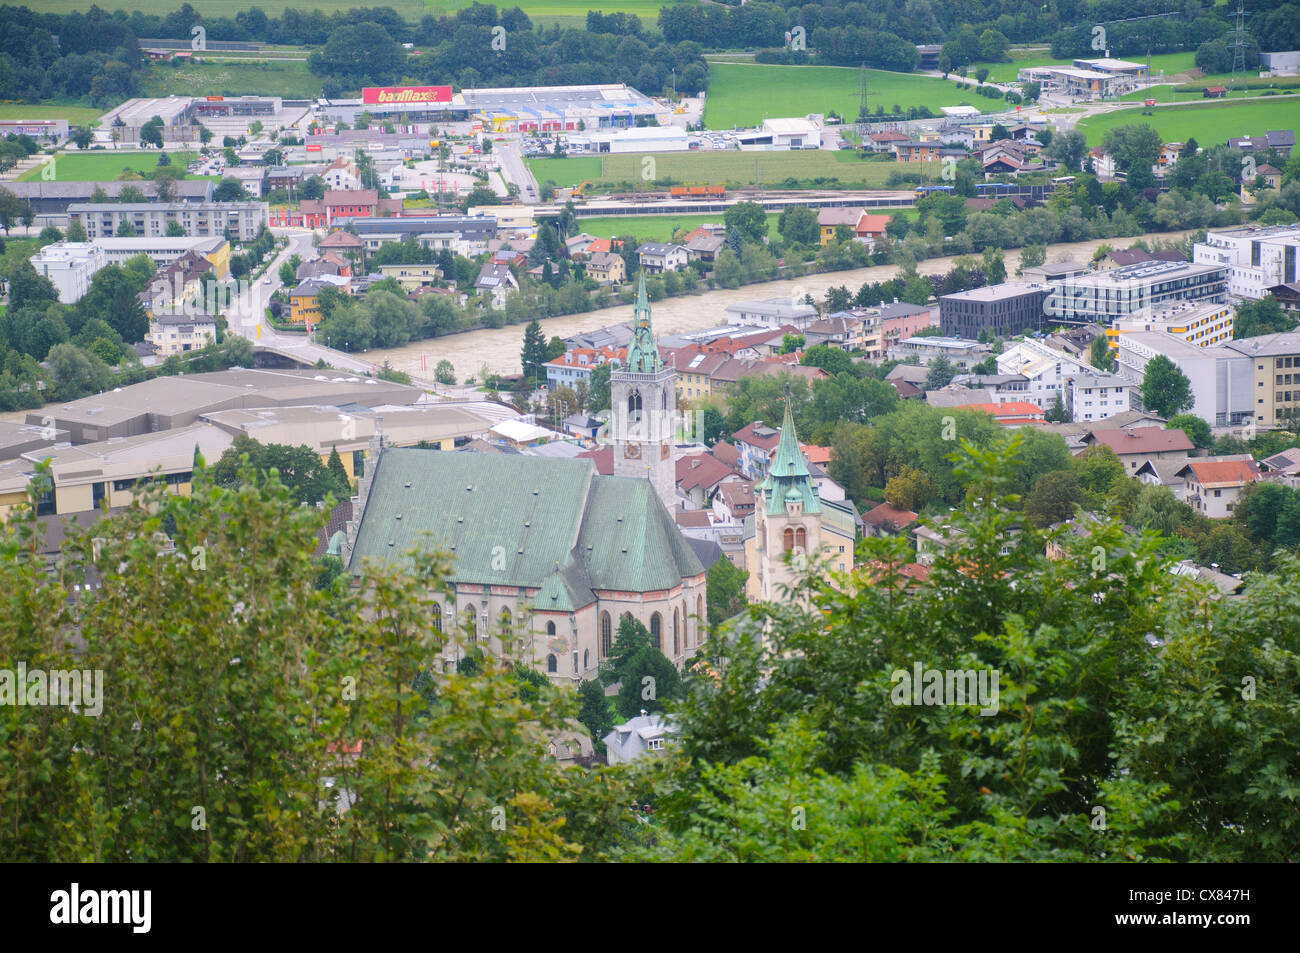 Austria, Tyrol, Schwaz elevated view Stock Photo